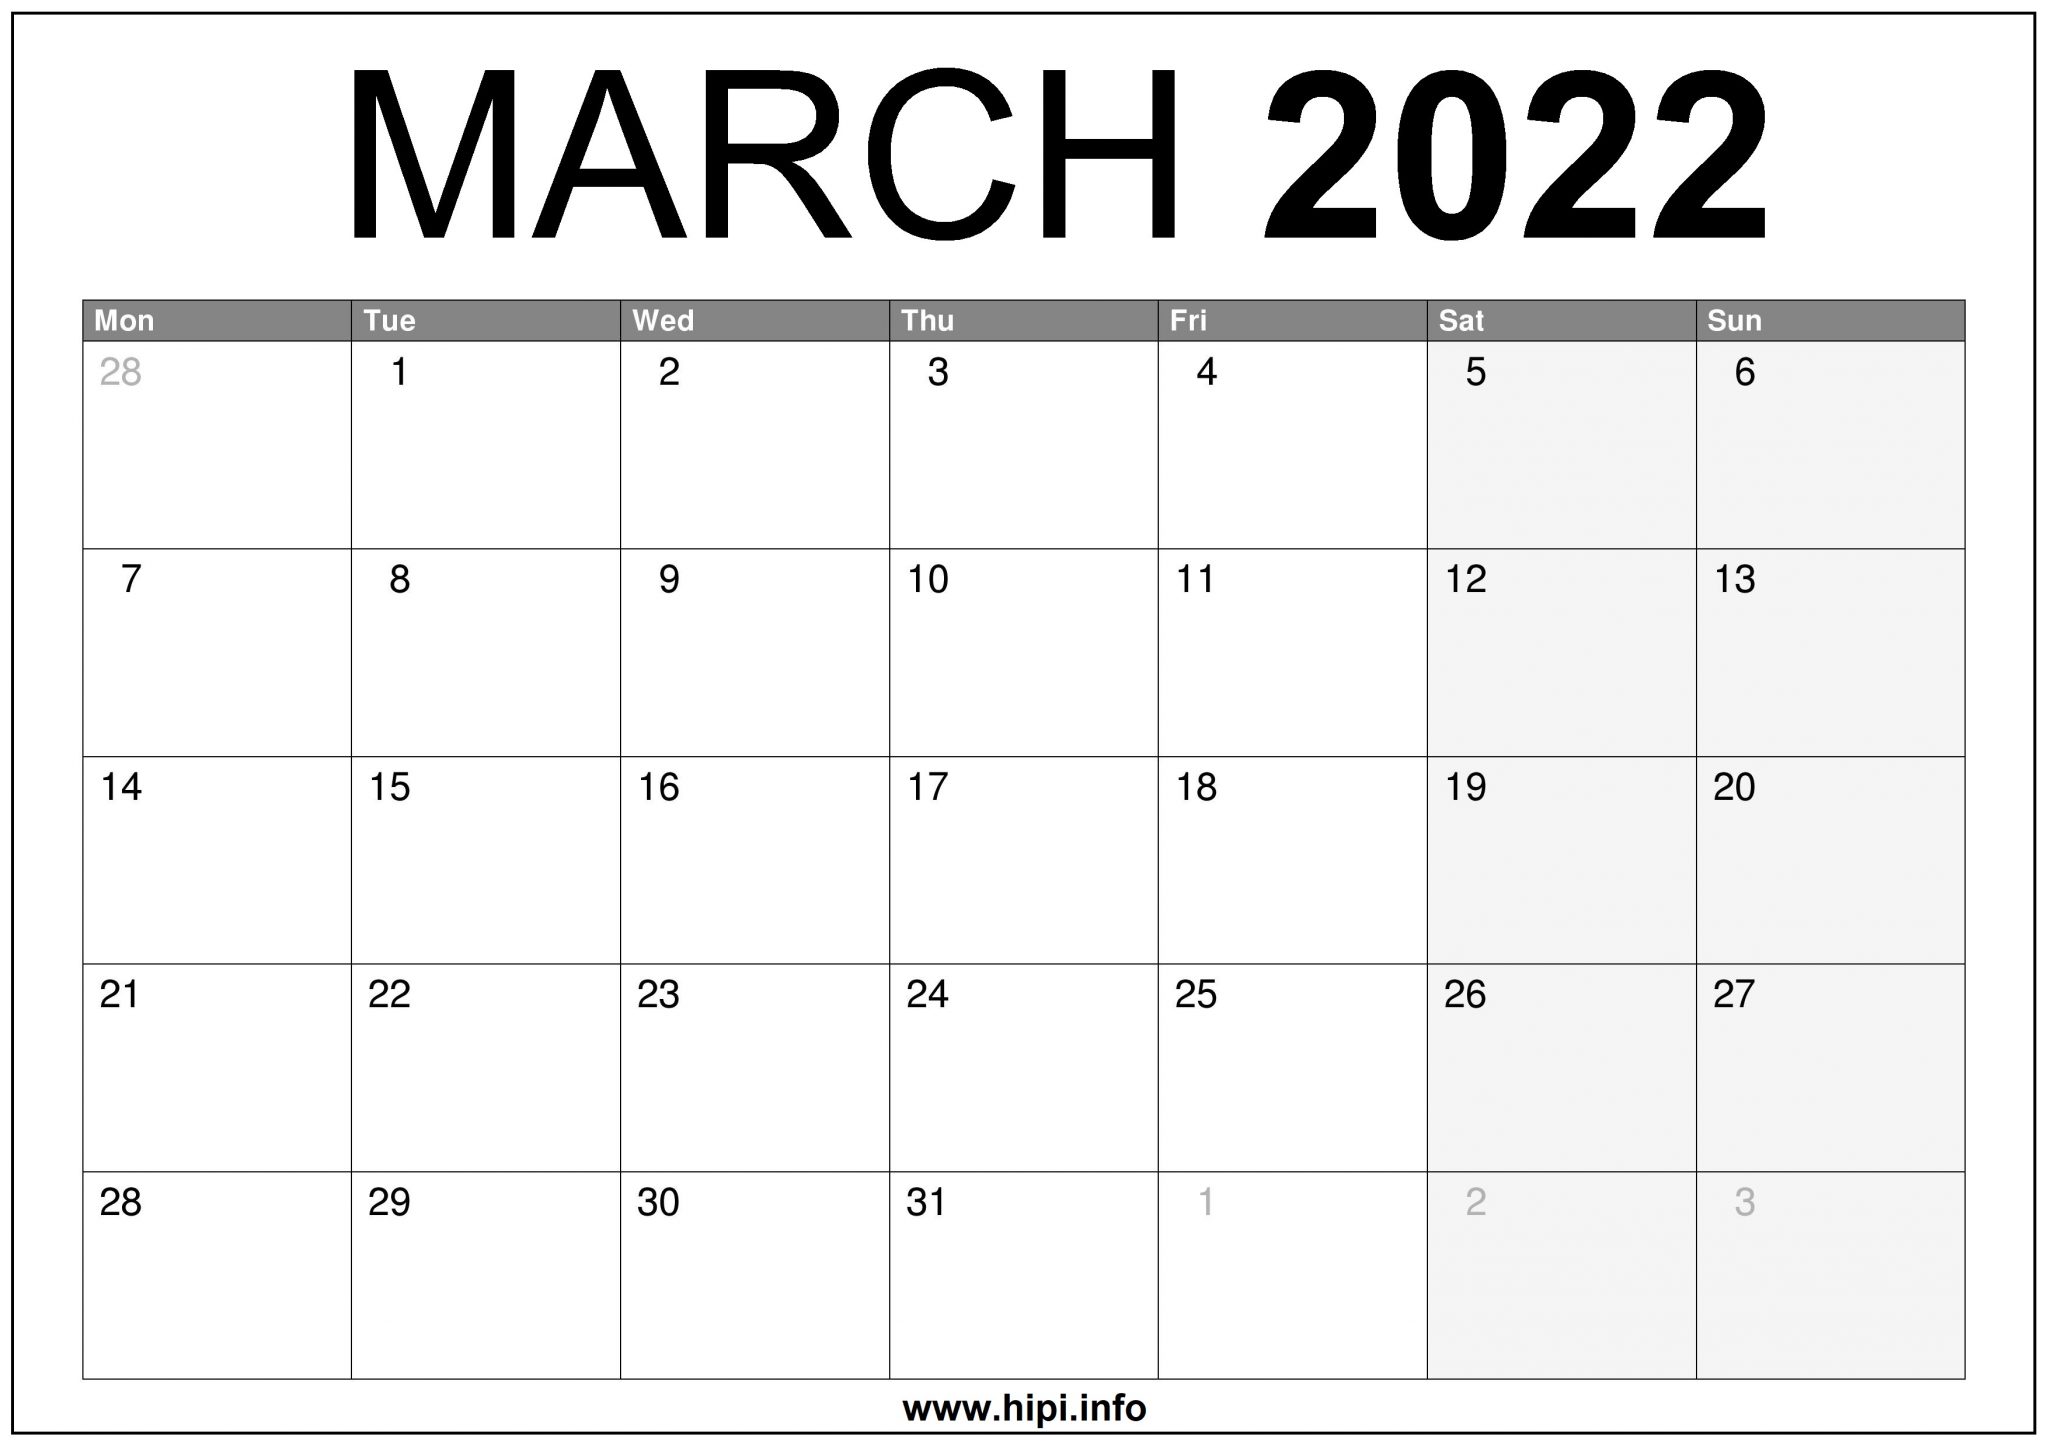 March 2022 Calendar Free Printable Calendar Templates March 2022 